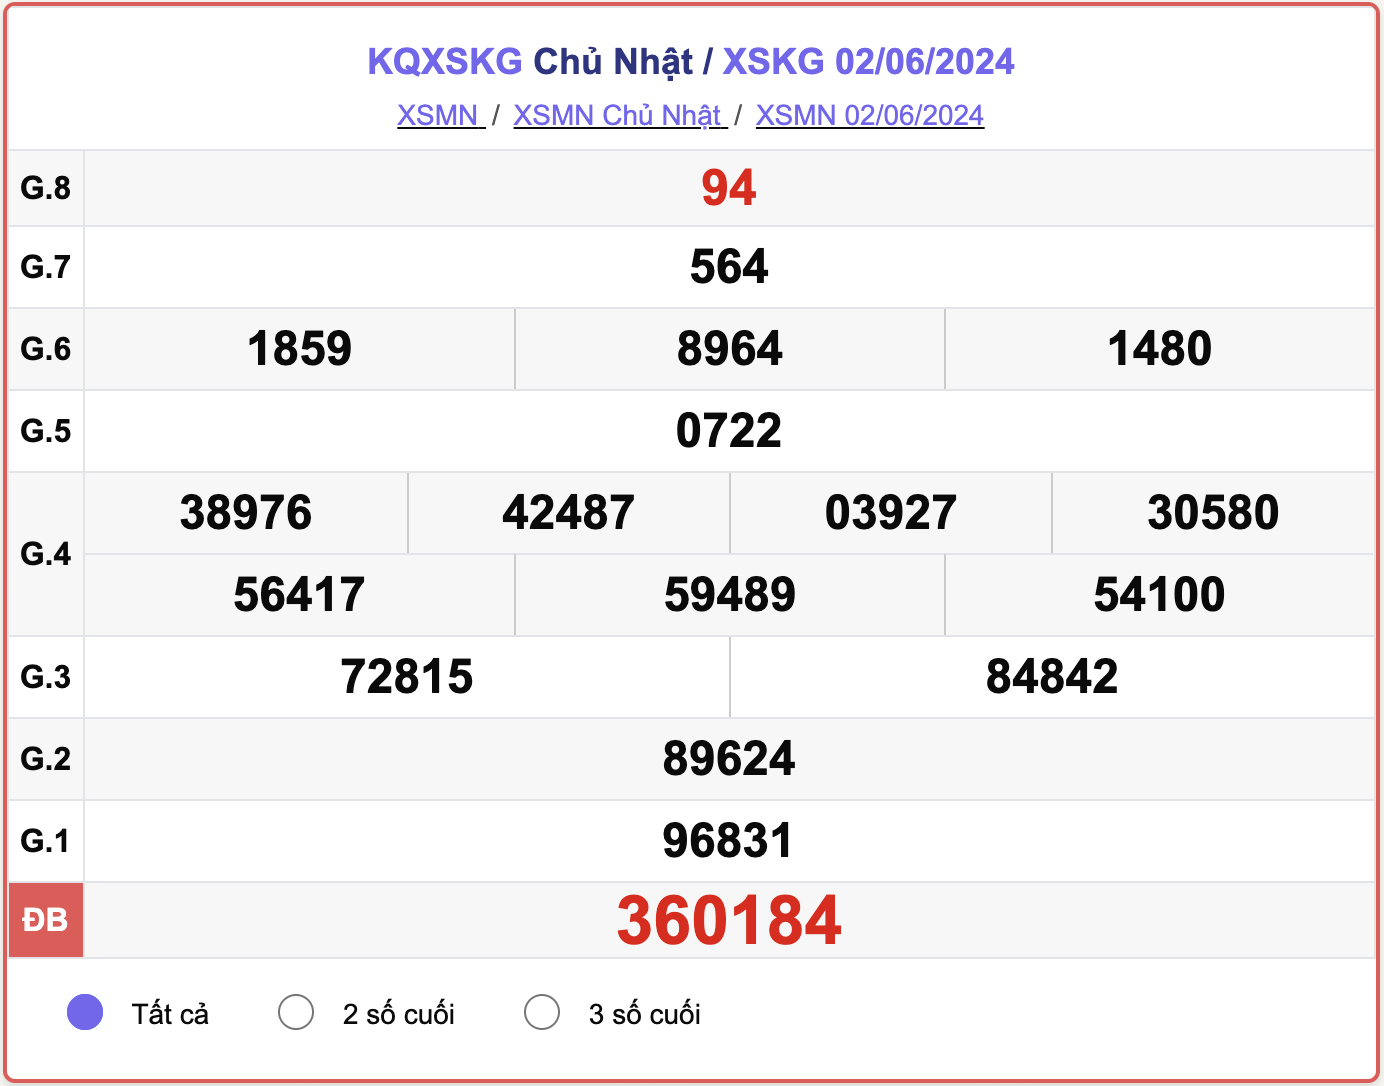 XSKG 2/6, kết quả xổ số Kiên Giang hôm nay 2/6/2024.